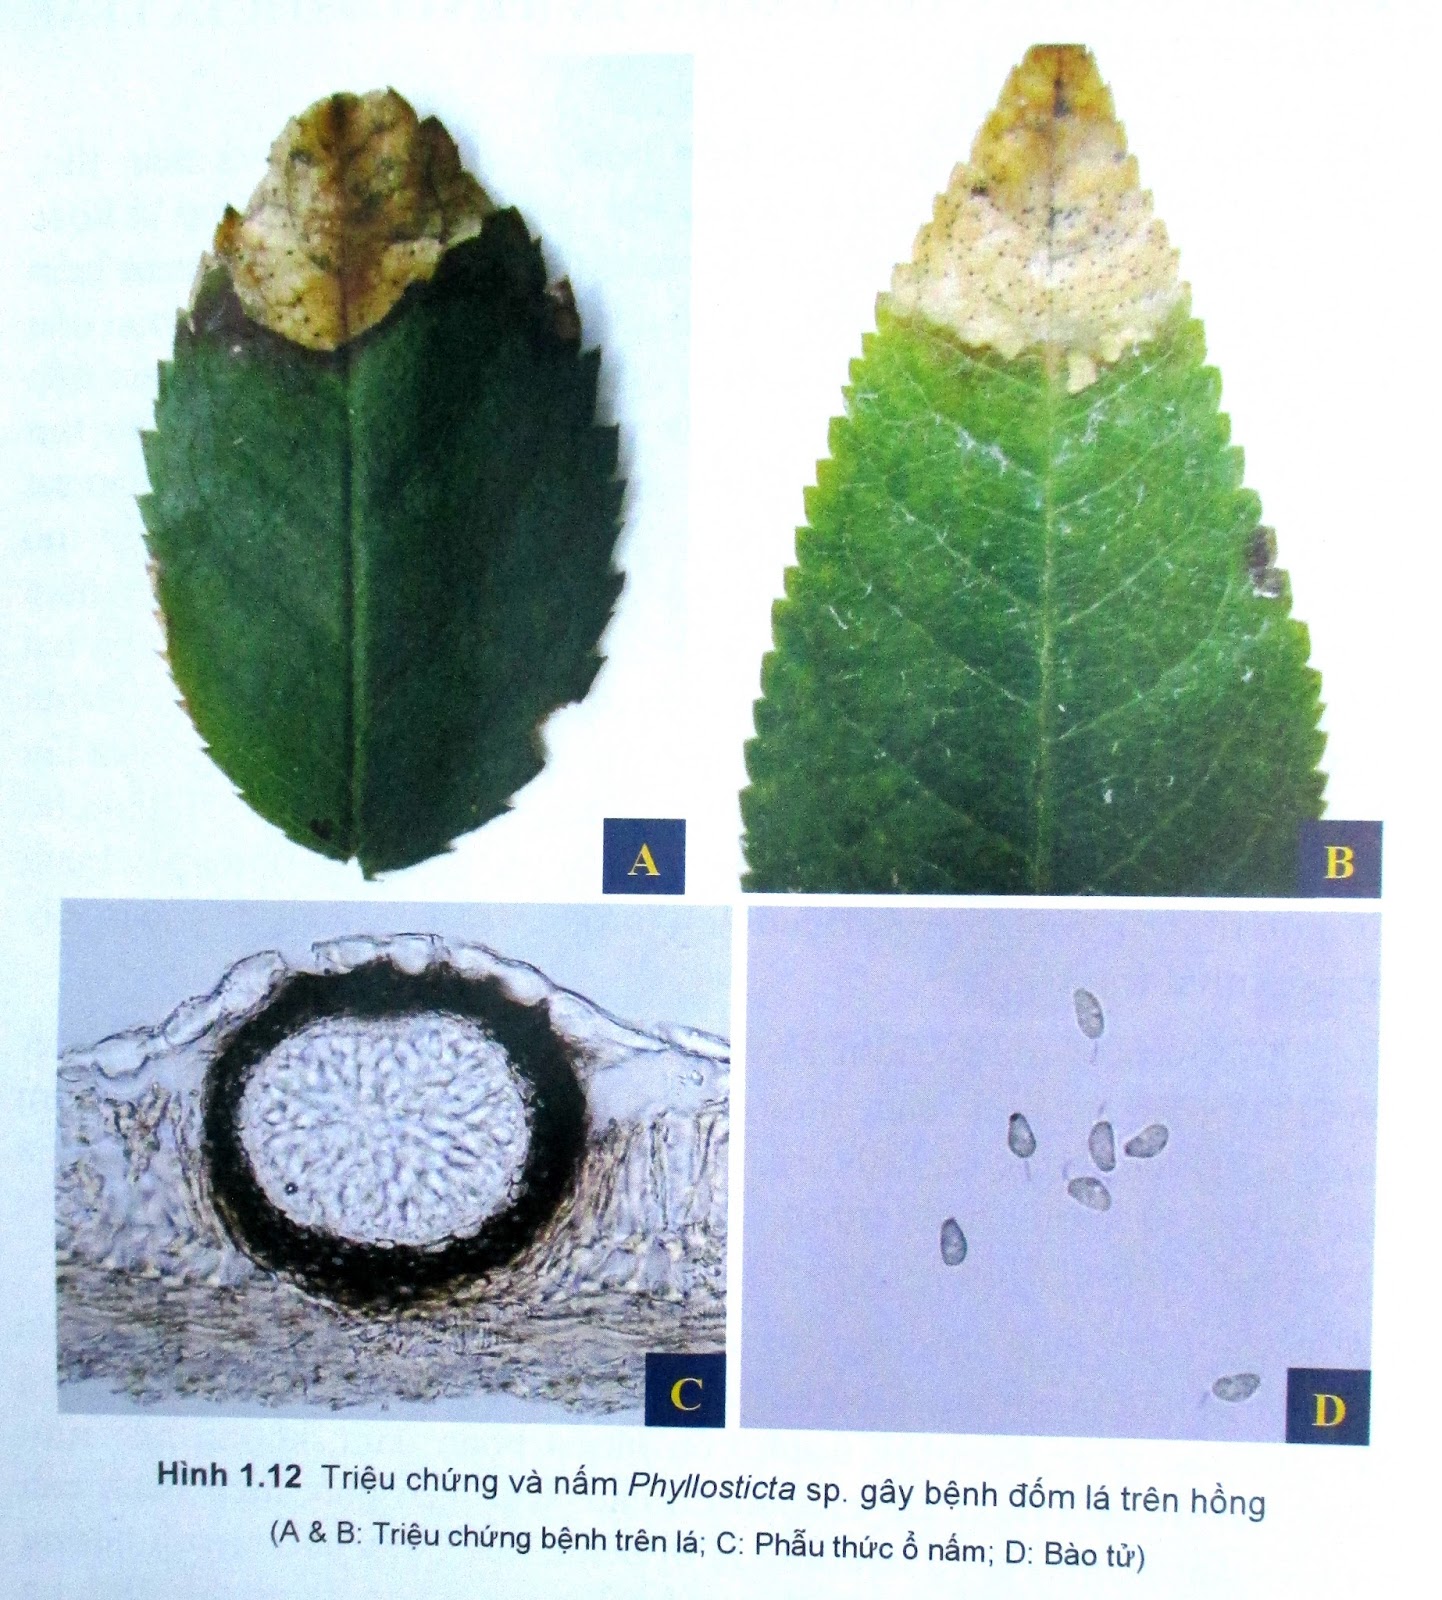 Hình 1.12 Triệu chứng và nấm Phyllosticta sp. gây bệnh đốm lá trên hồng (A & B: Triệu chứng bệnh trên lá; C: Phẫu thức ổ nấm; D: Bào tử)